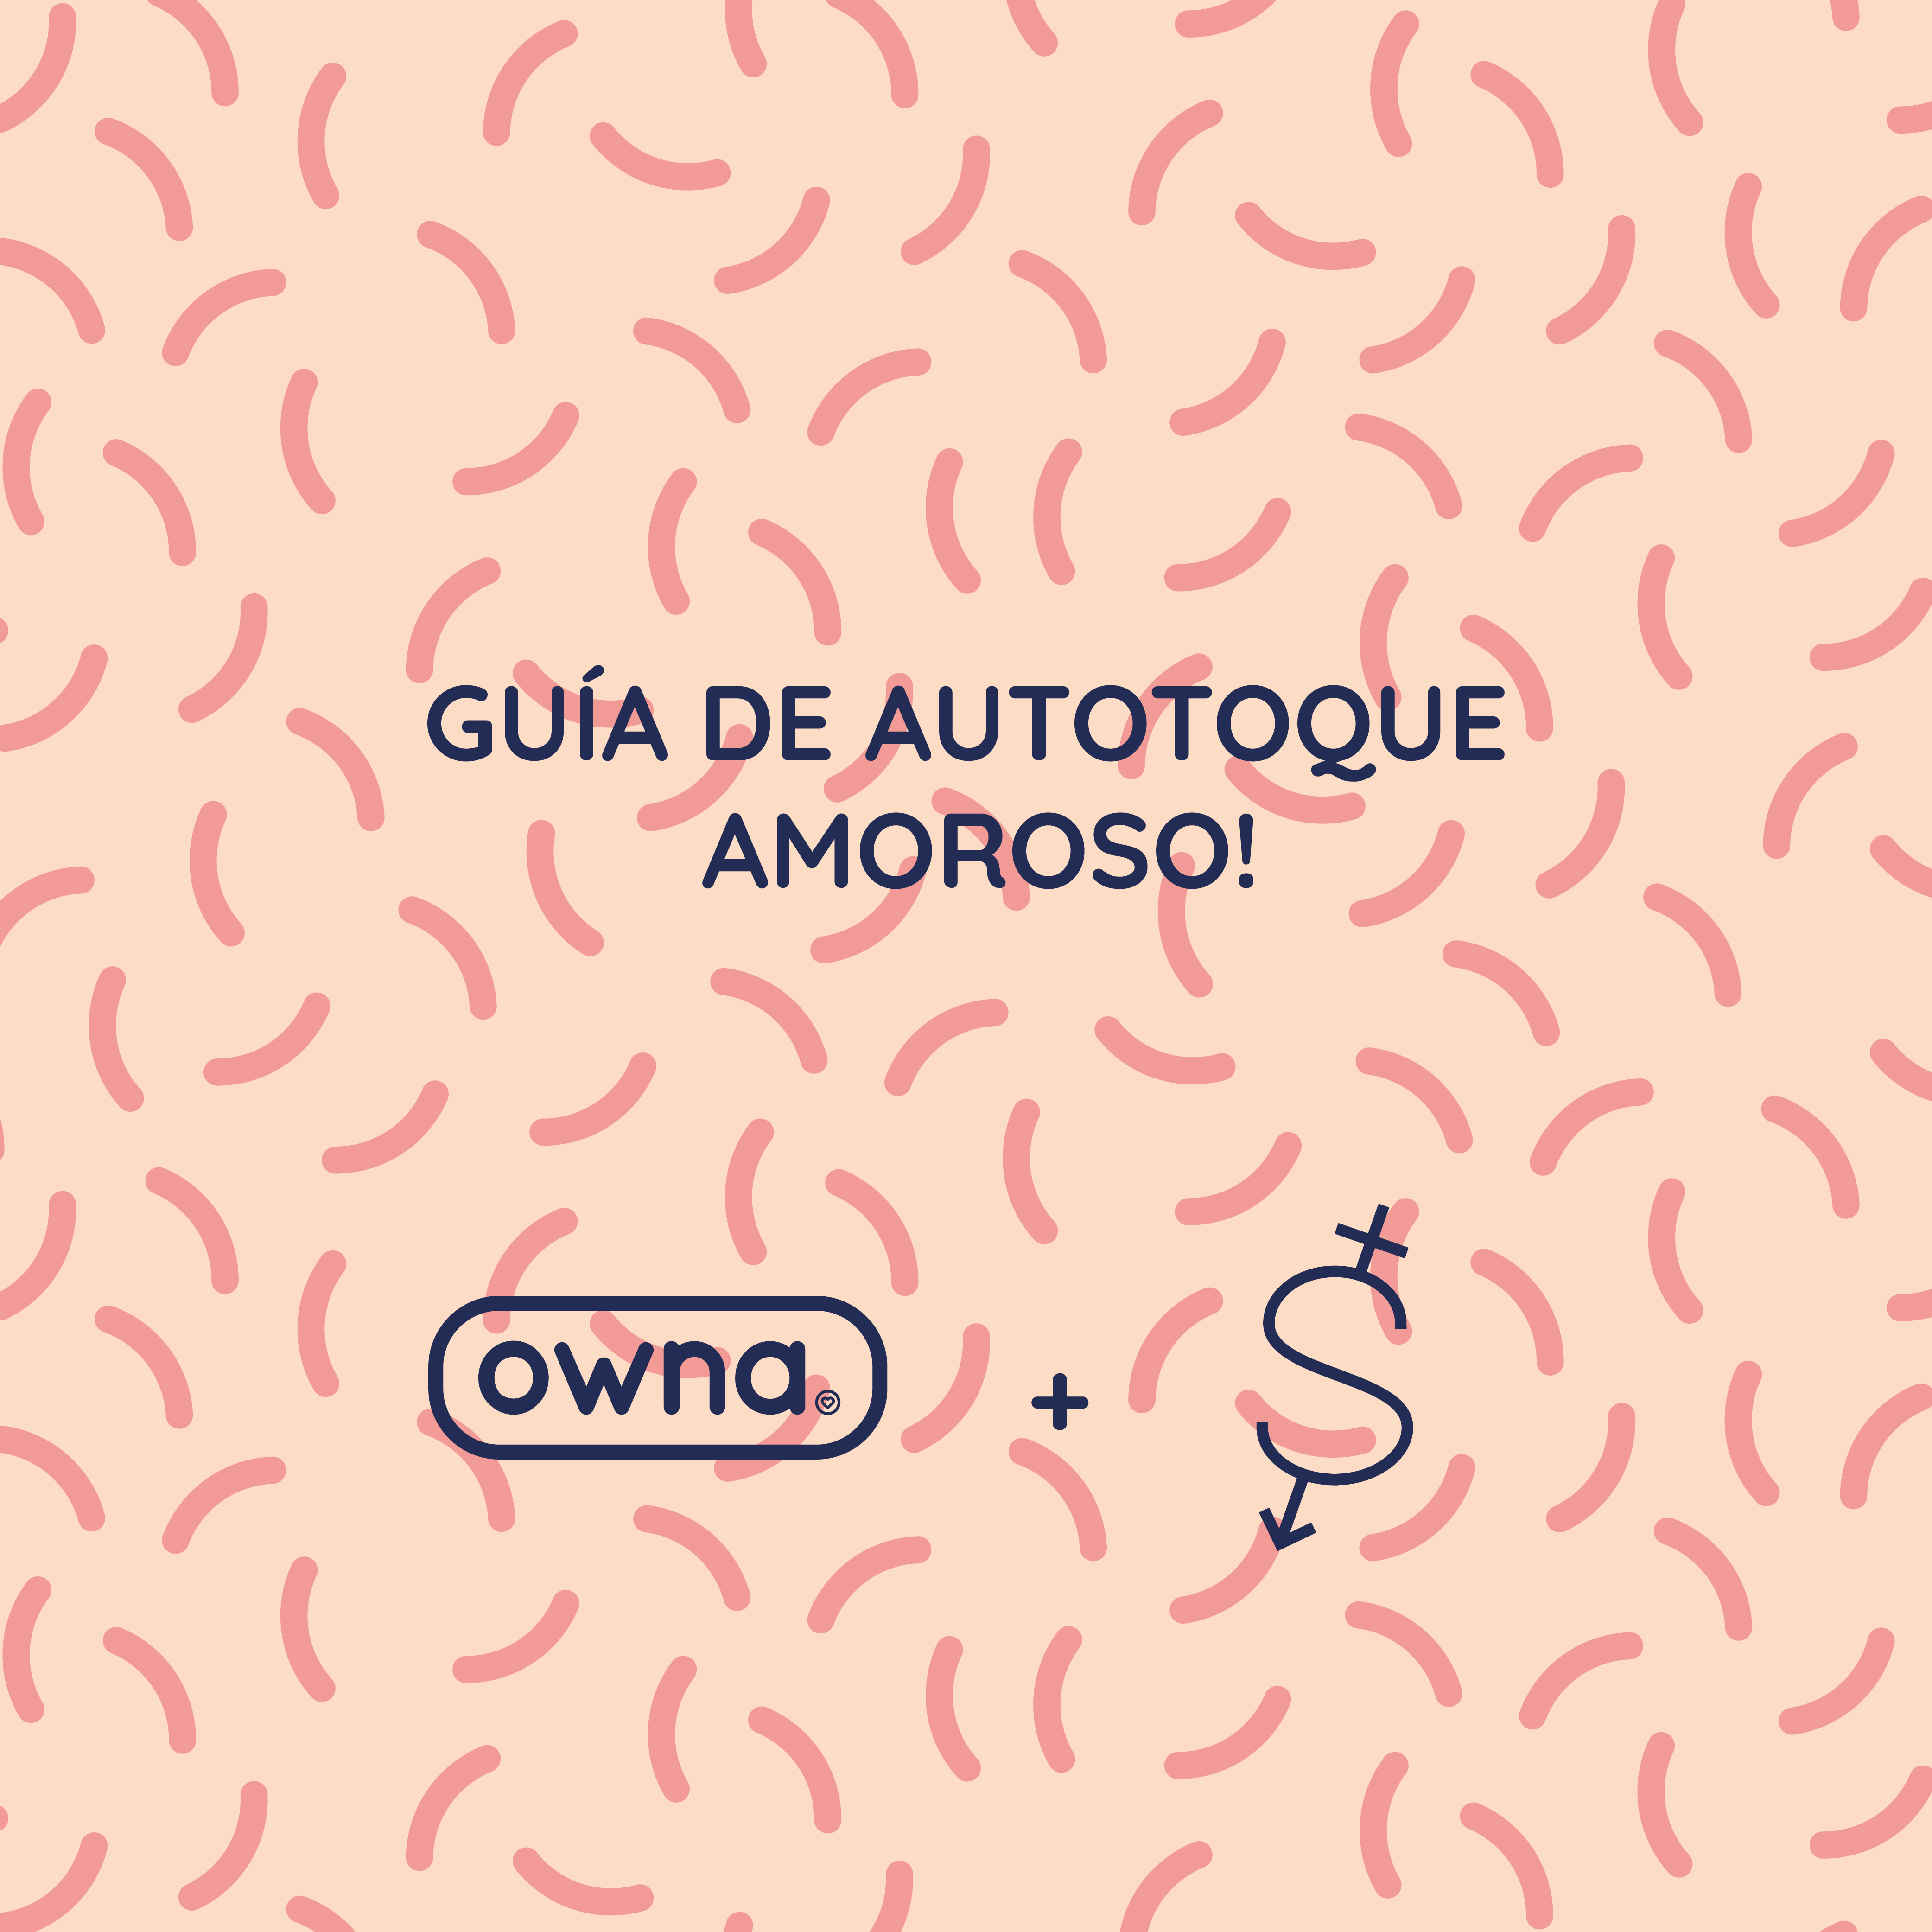 The Autotoque Amoroso! (Gratis) Ownacare